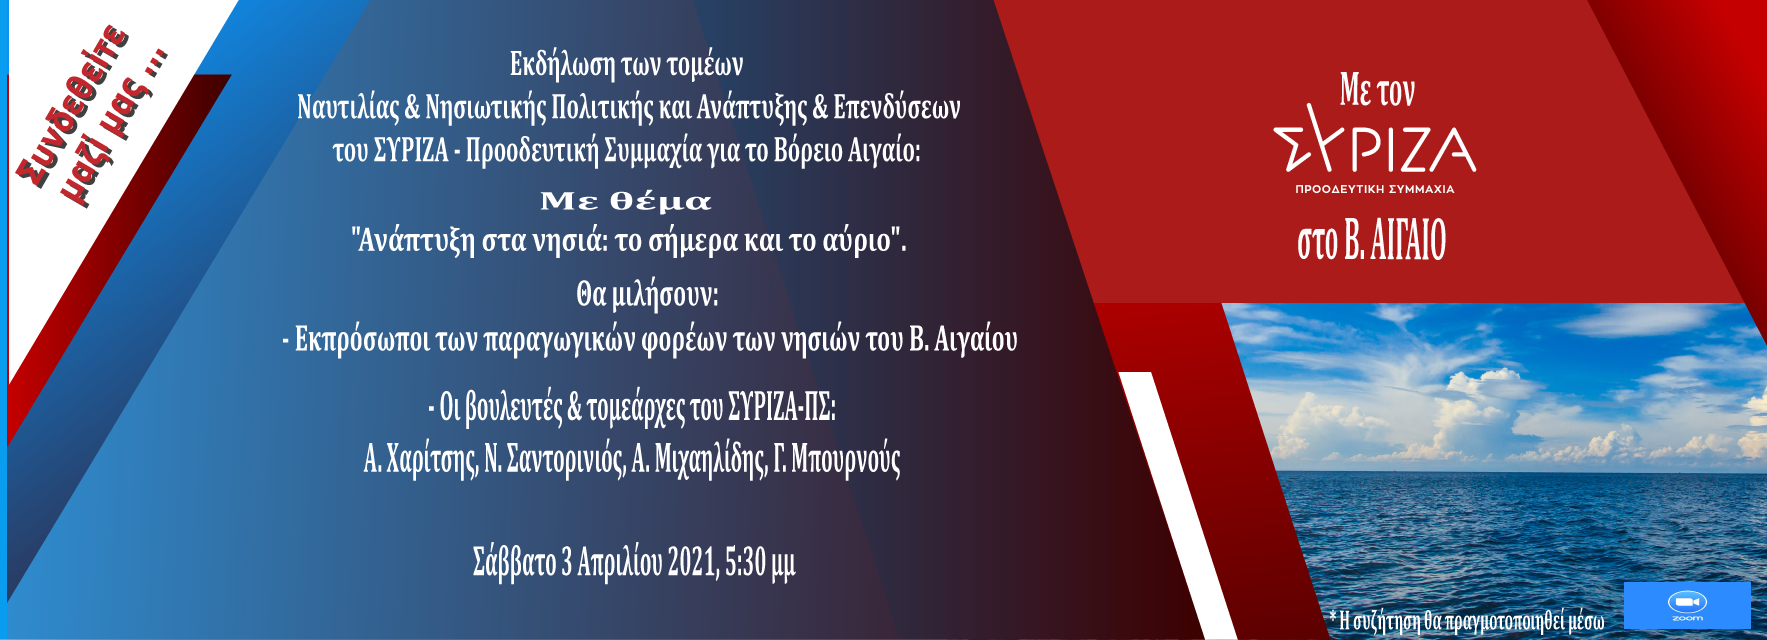 Διαδικτυακή εκδήλωση του ΣΥΡΙΖΑ - Προοδευτική Συμμαχία για την οικονομία και ανάπτυξη στο Β. Αιγαίο με συμμετοχή δεκάδων φορέων και βασικό ομιλητή  τον Α. Χαρίτση